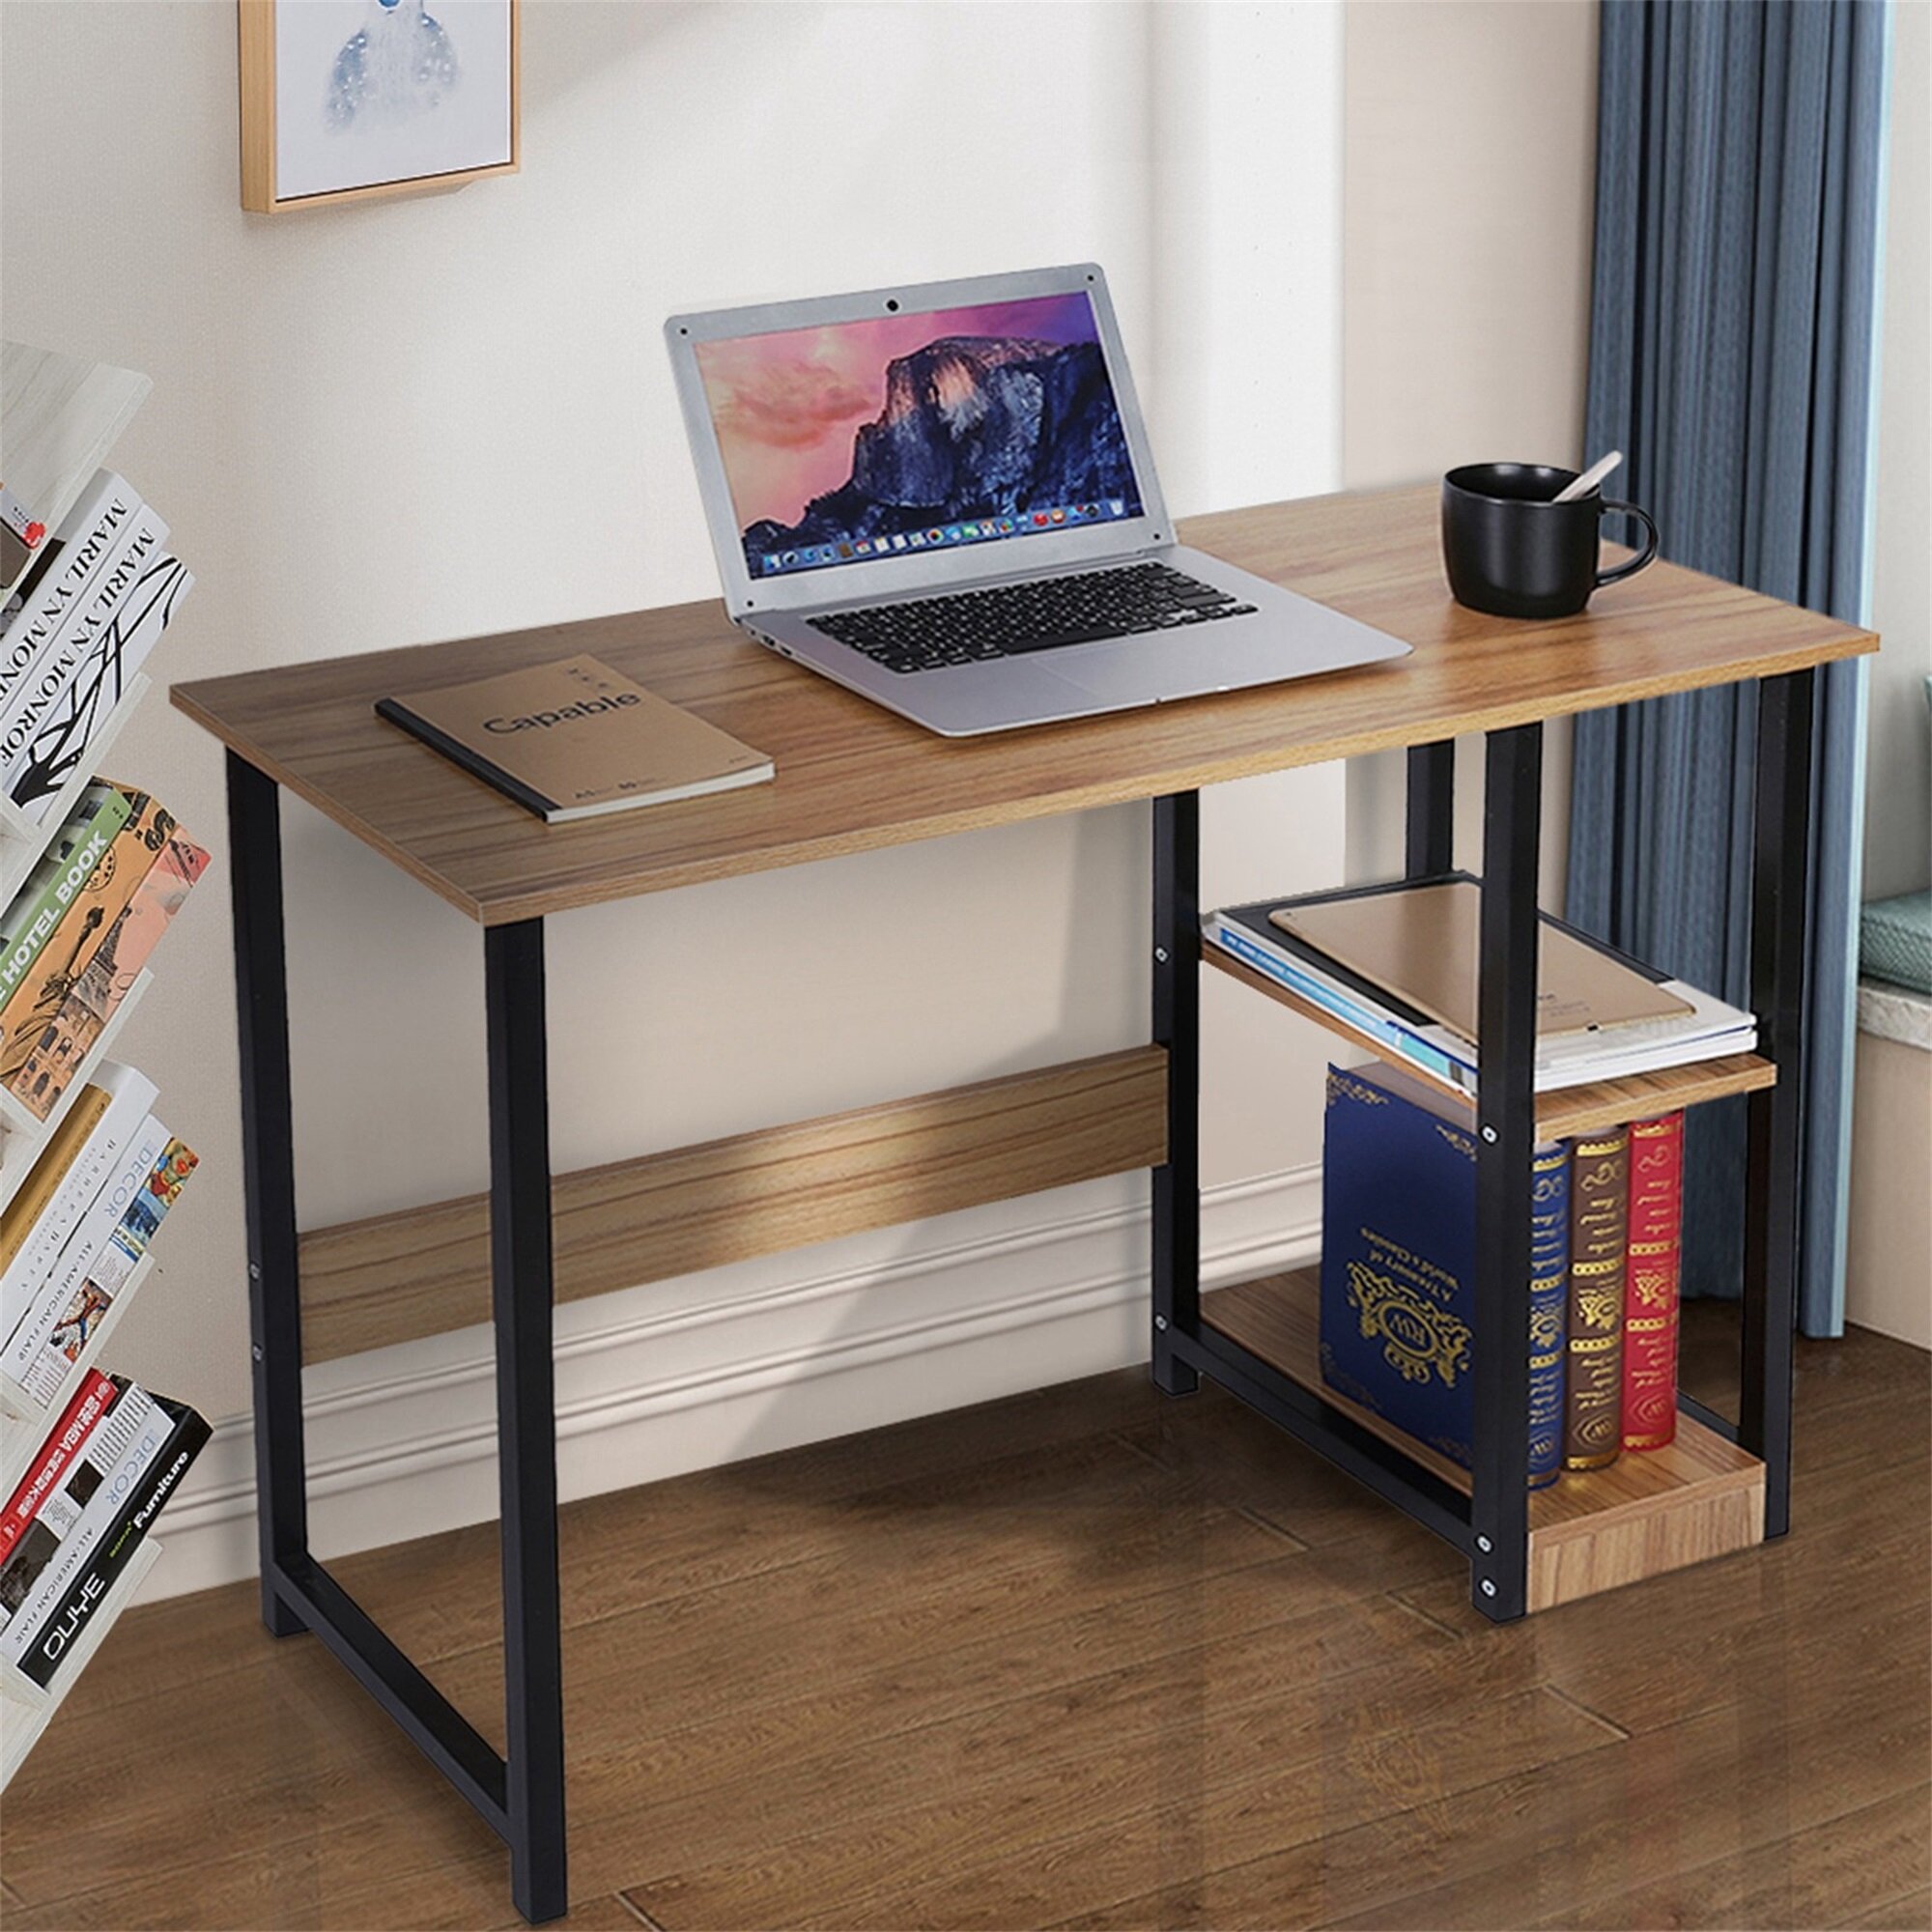 Details about   Home Desktop Computer Desk Bedroom Laptop Study Table Office Desk Workstation 